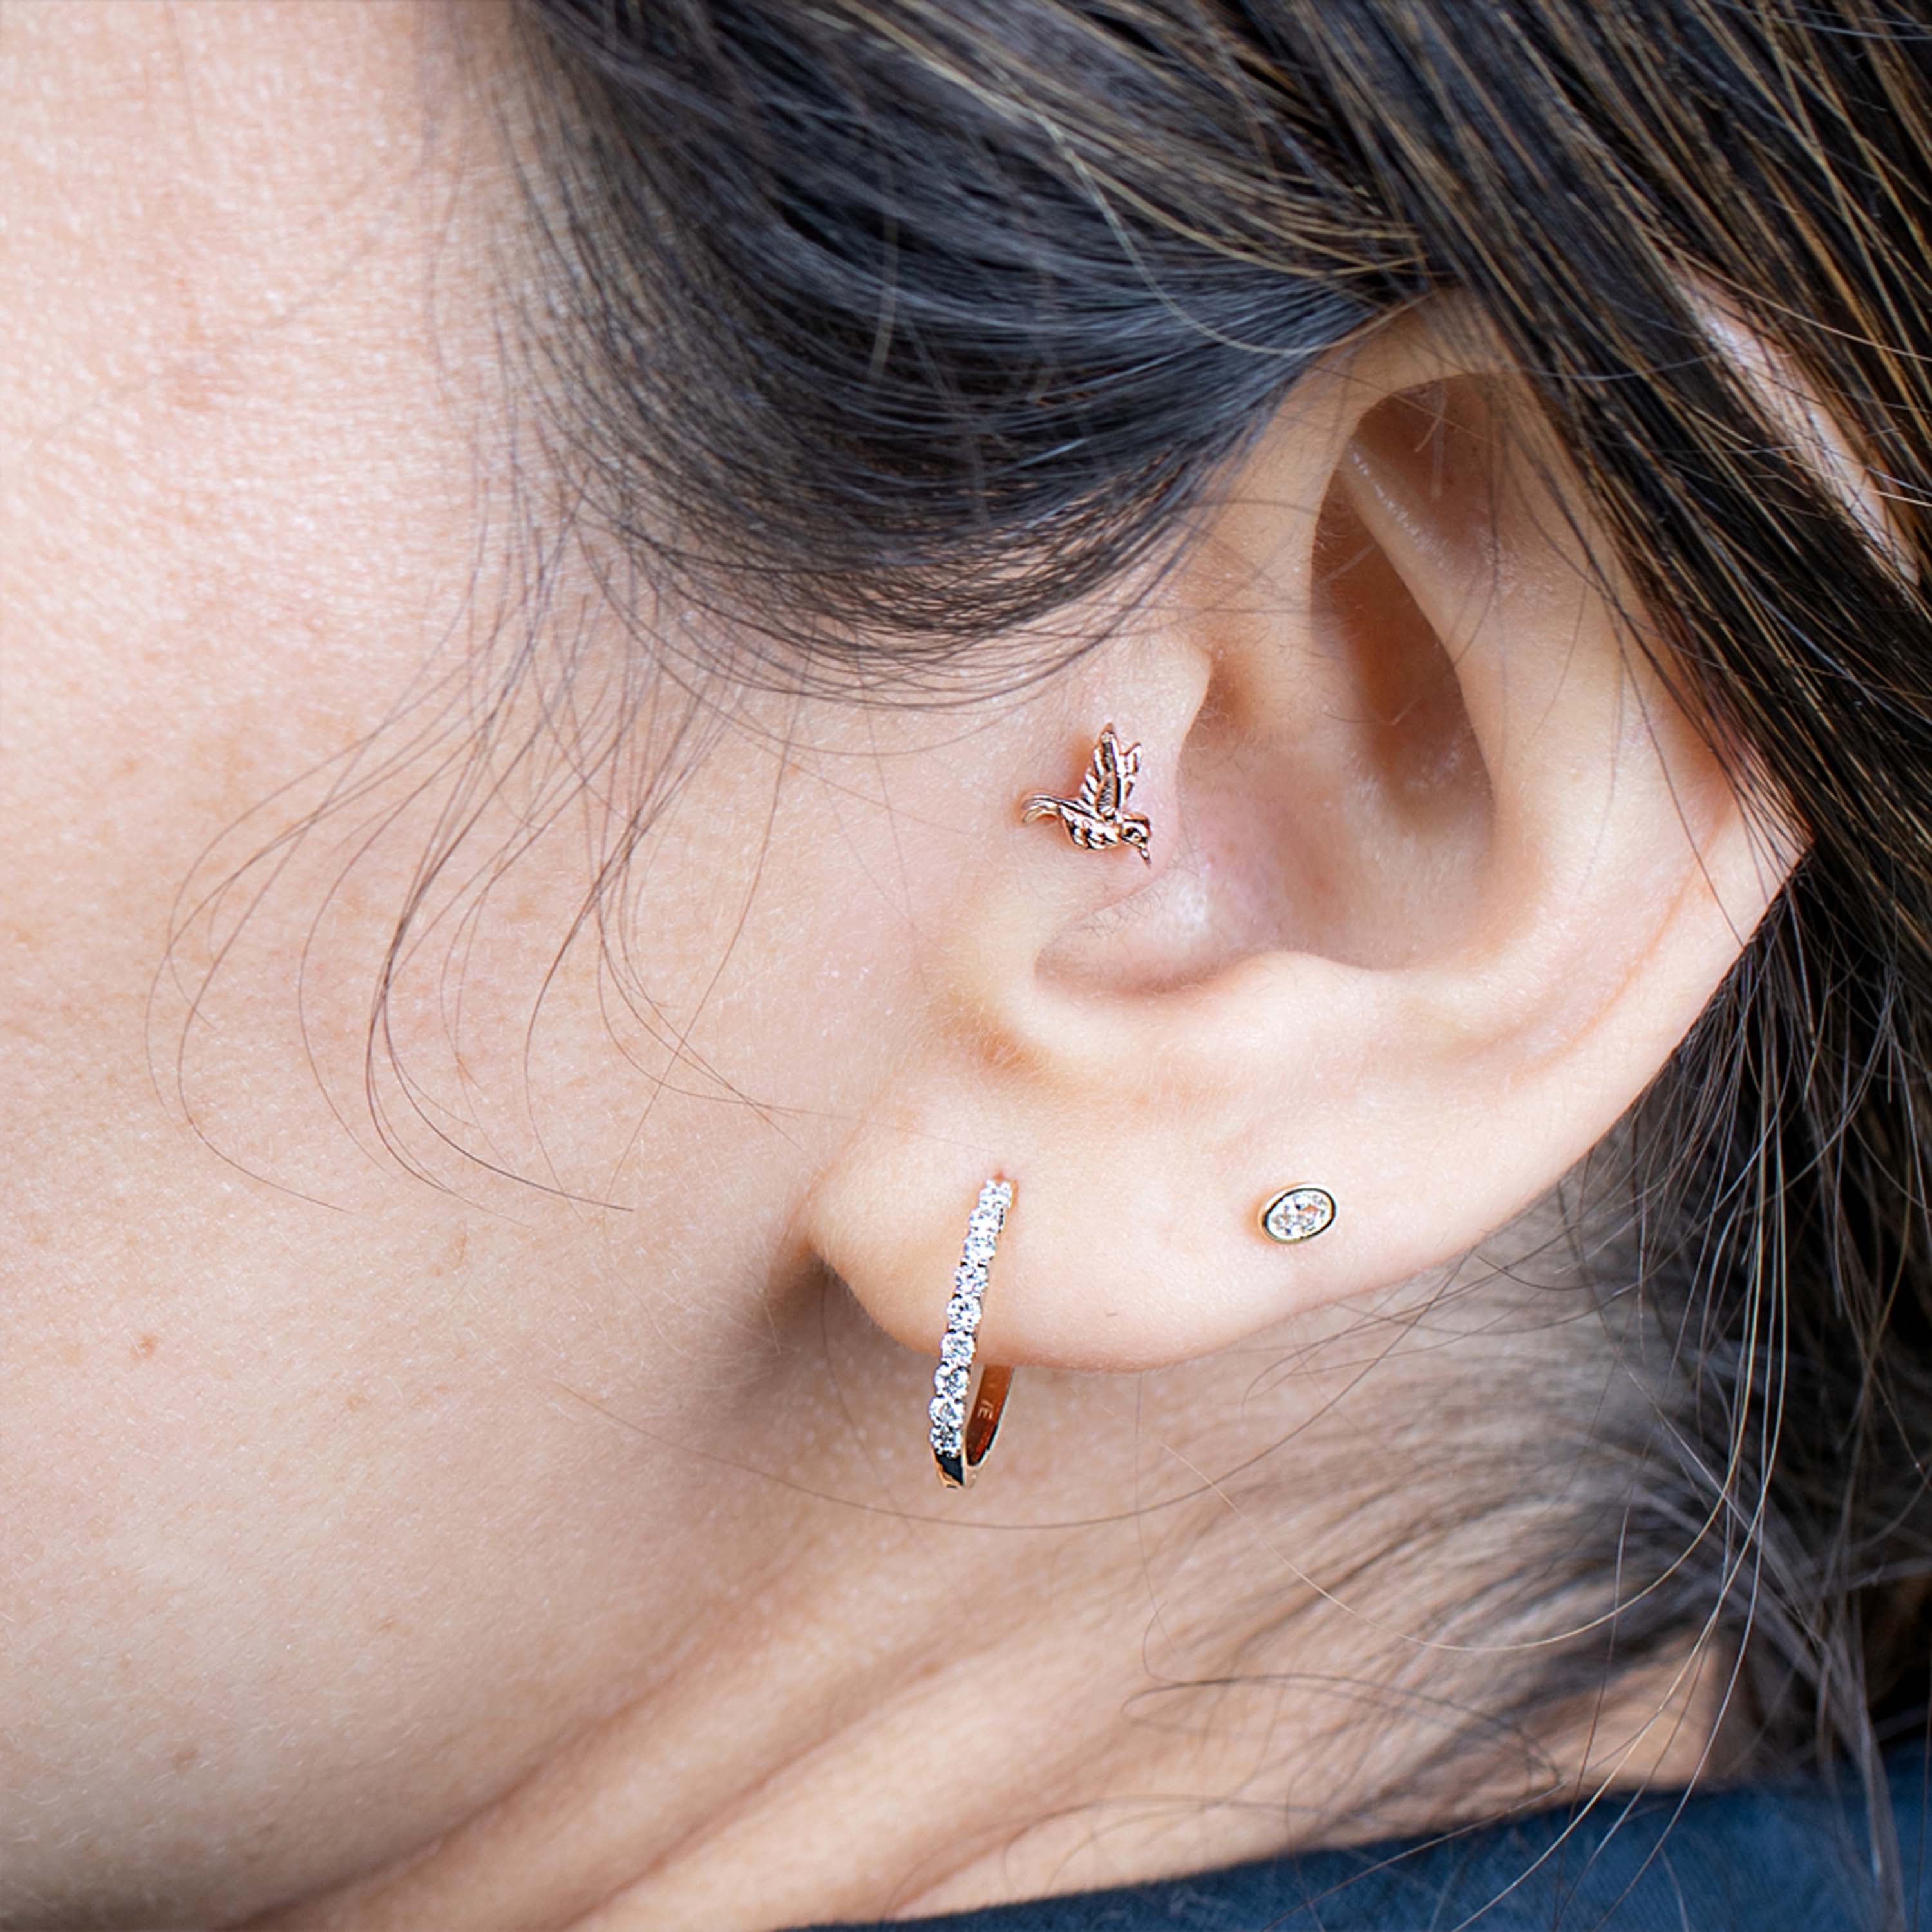 2pcs 16G 316L Stainless Steel Ear Cartilage Earrings Helix Industrial –  Arardo